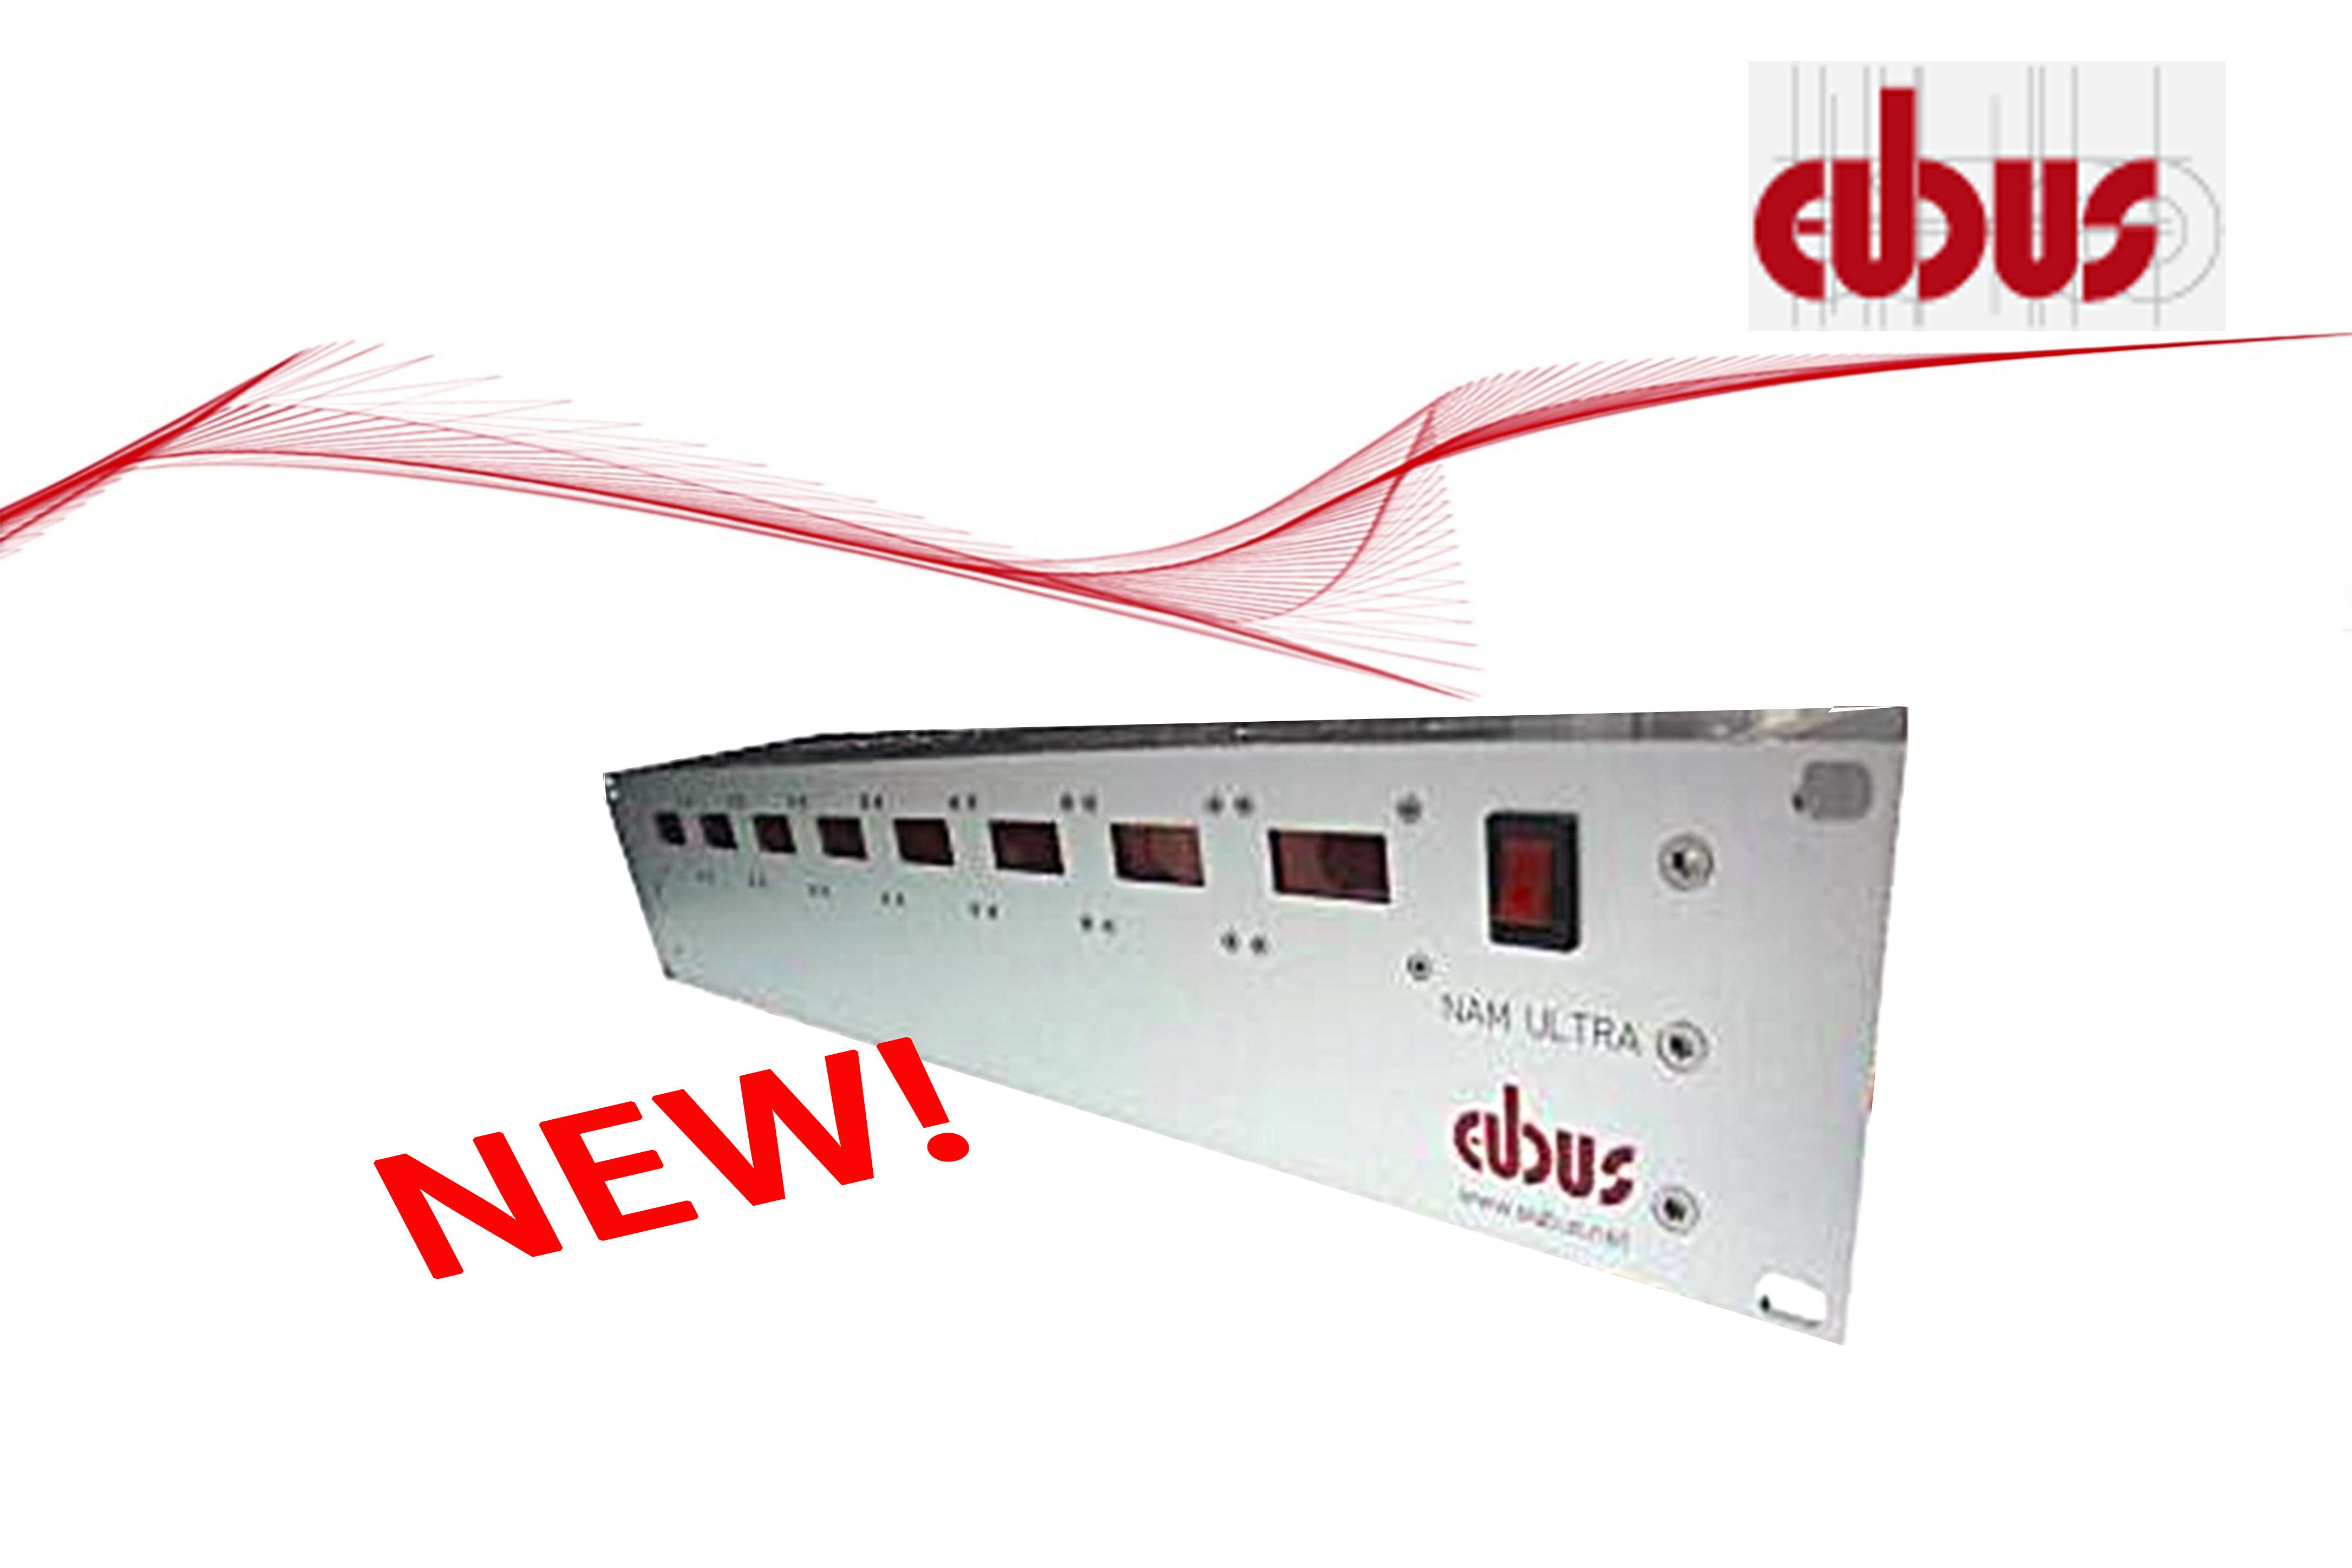 Eubus NAM-ULTRA网络衰减器系统< 6dB (1GHz), <7.5dB (6GHz)